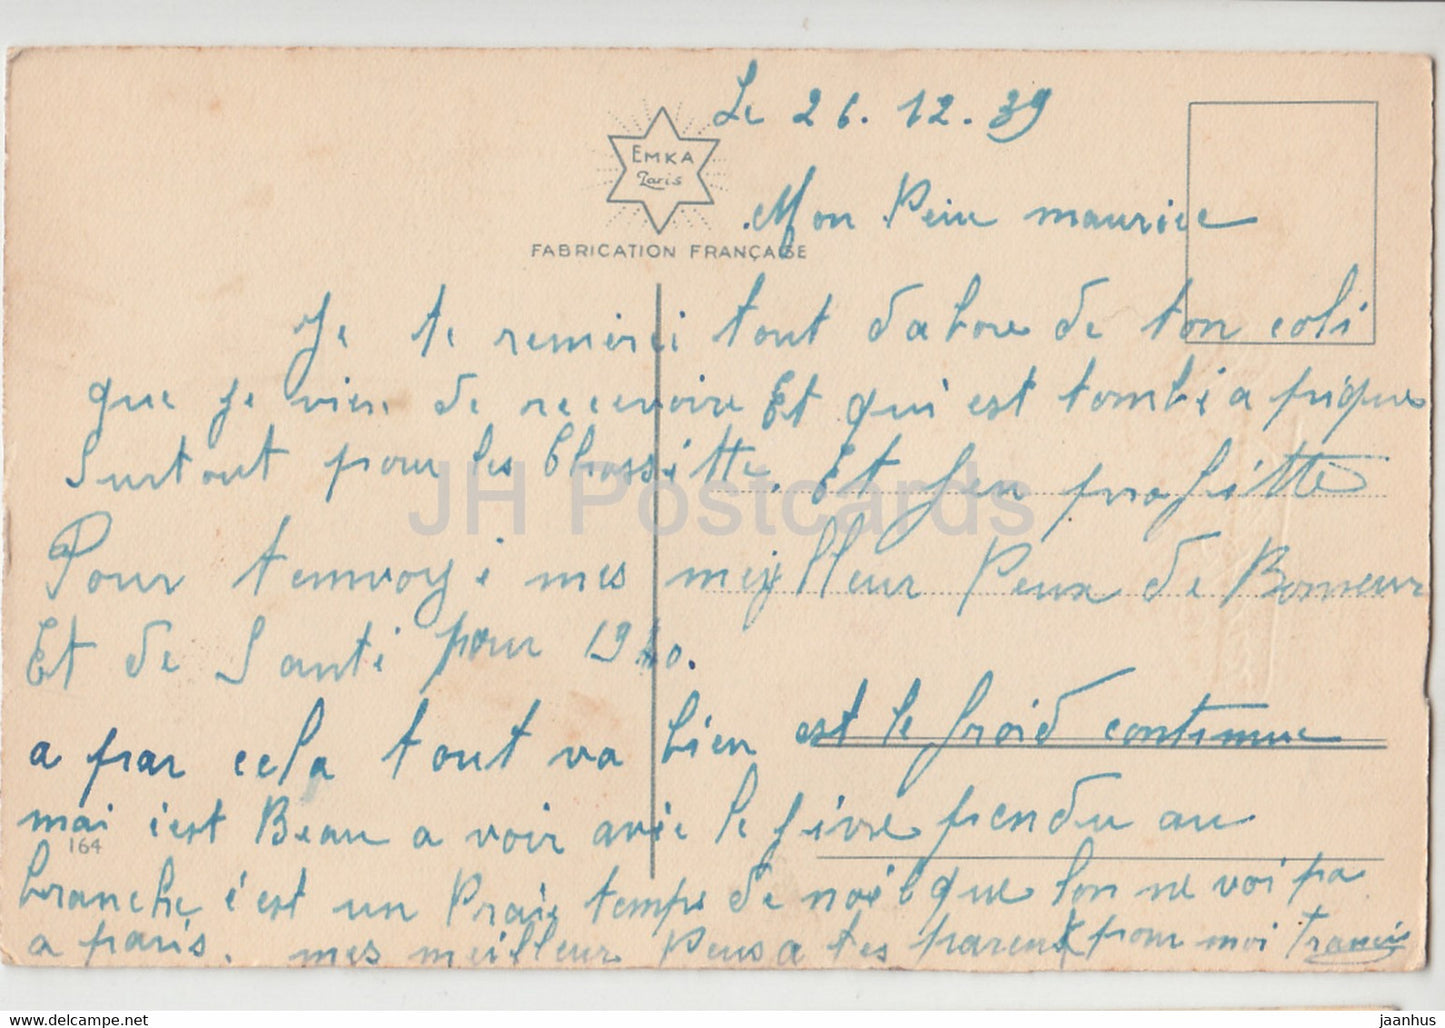 Geburtstagsgrußkarte - Bonne Annee - Blumen - Tulpen - EMKA Paris - Illustration - alte Postkarte 1939 - Frankreich - gebraucht